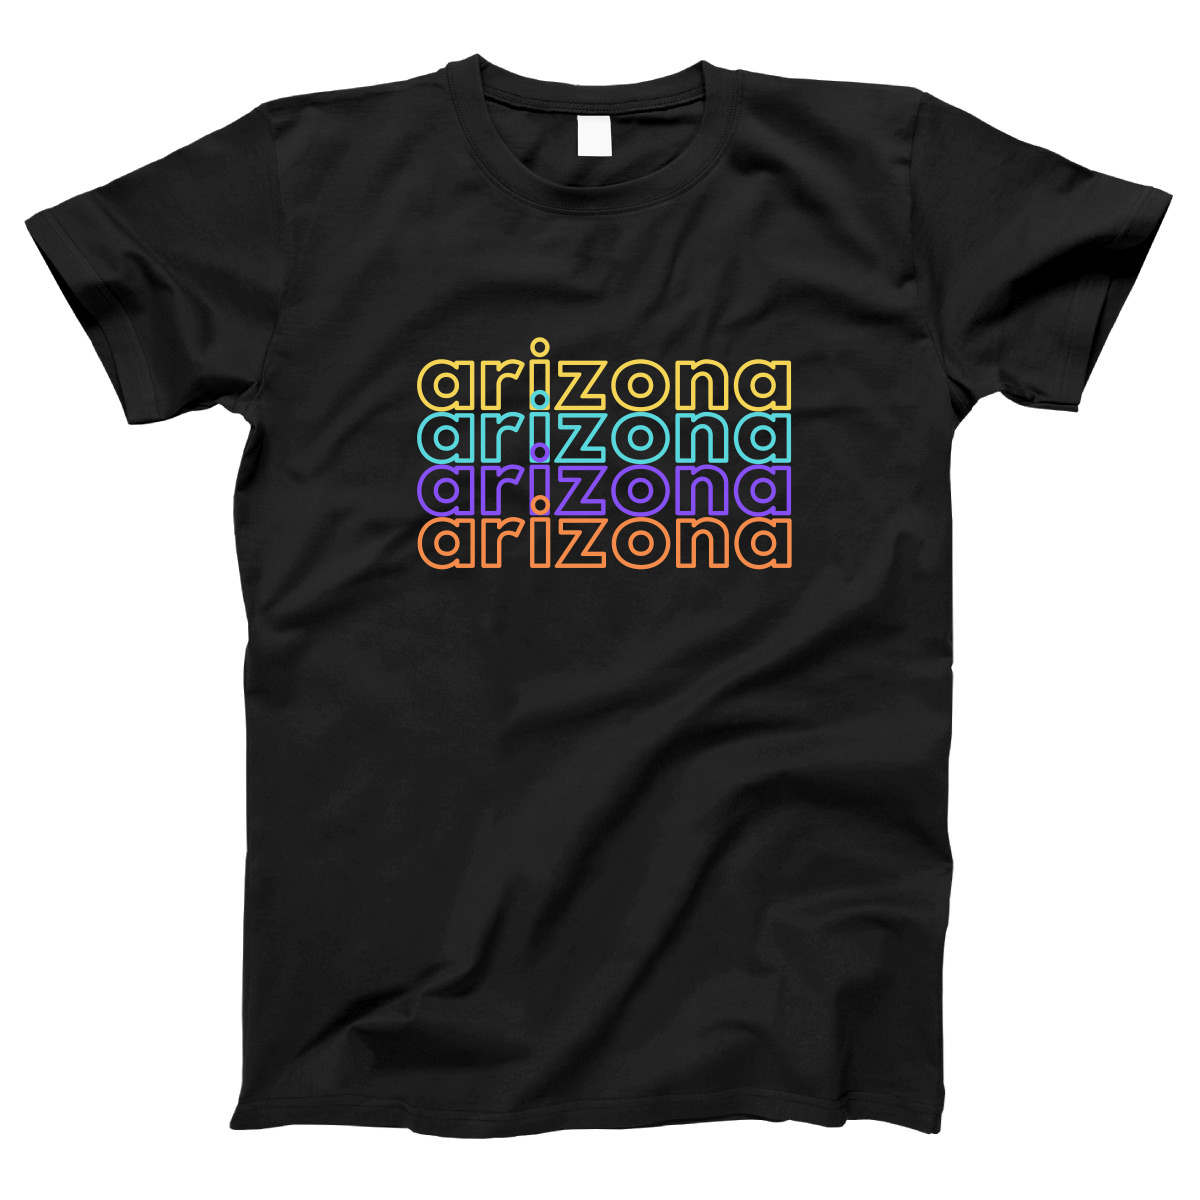 Arizona Women's T-shirt | Black